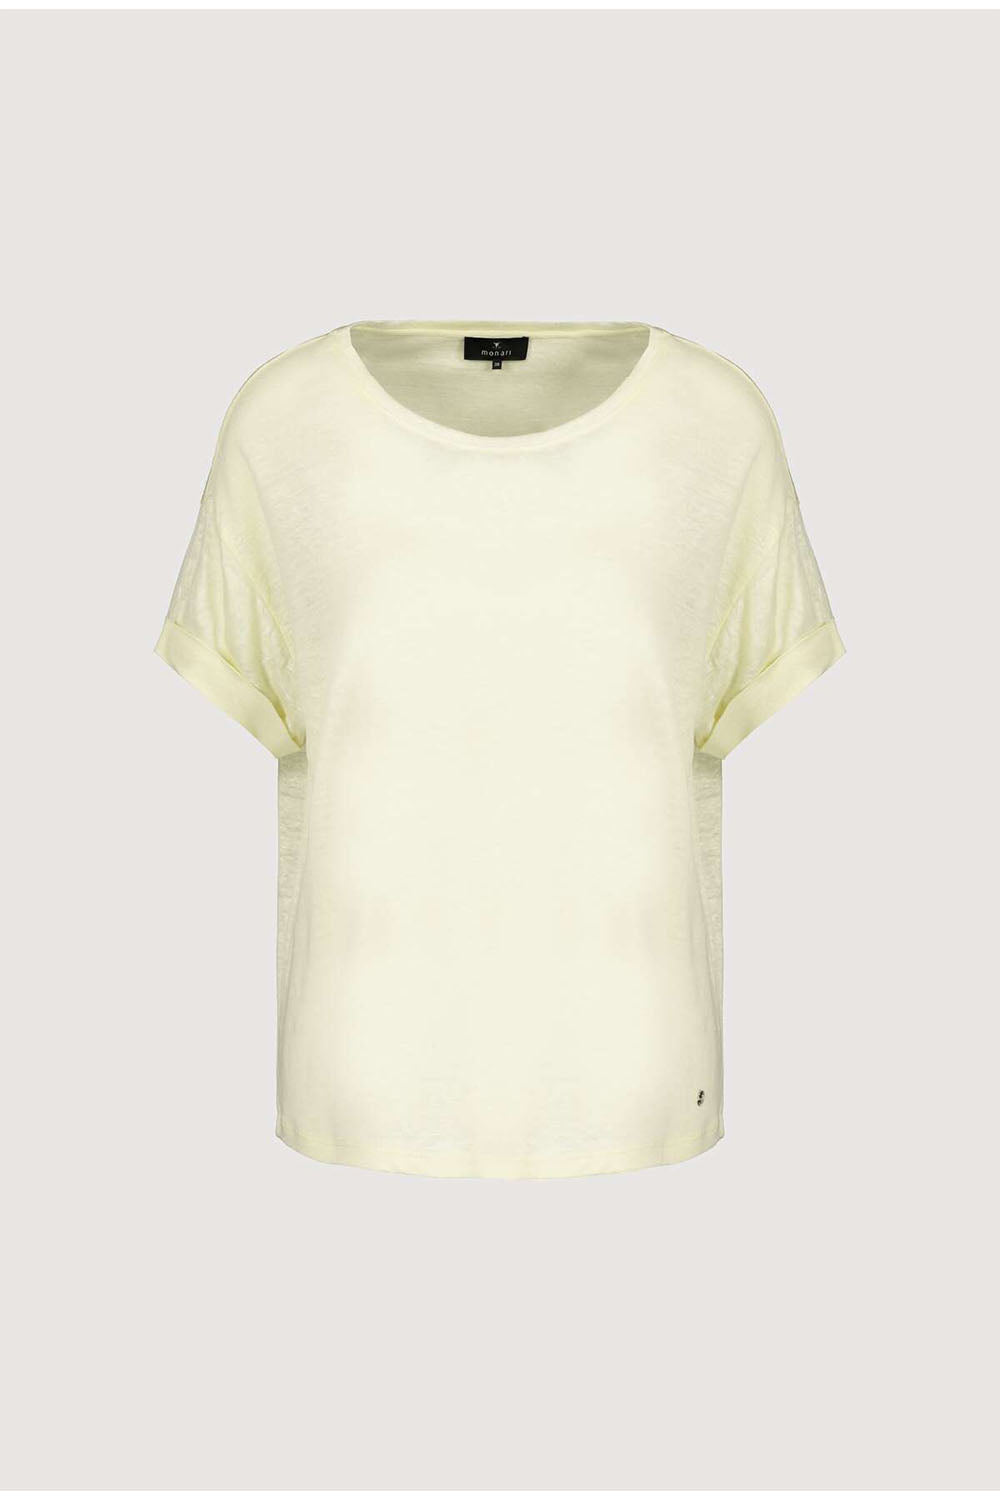 Monari Uni T Shirt M407218